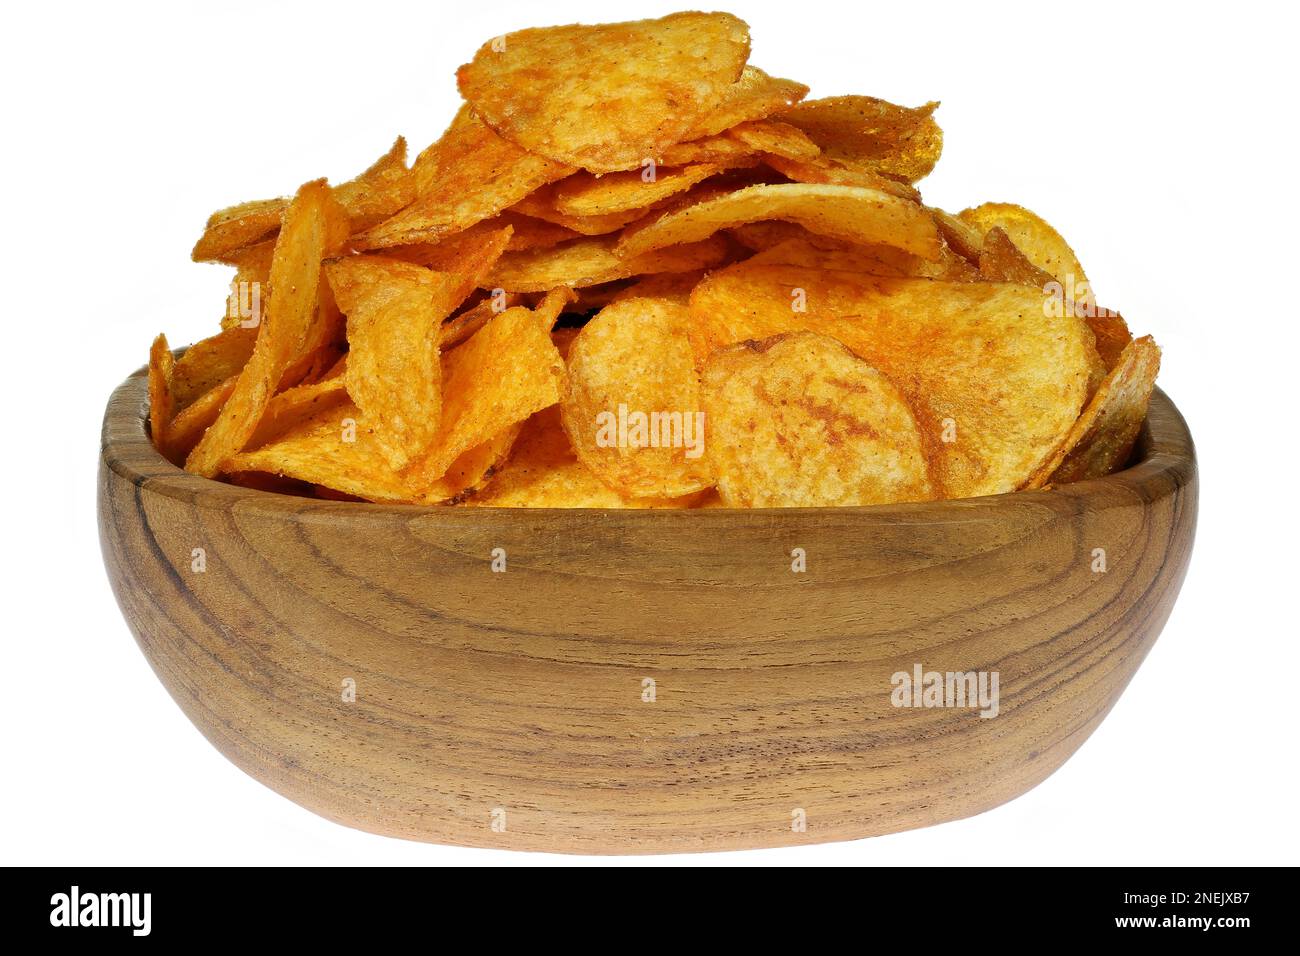 chips de pomme de terre aromatisées au paprika dans un bol en bois de téakwood isolé sur fond blanc Banque D'Images